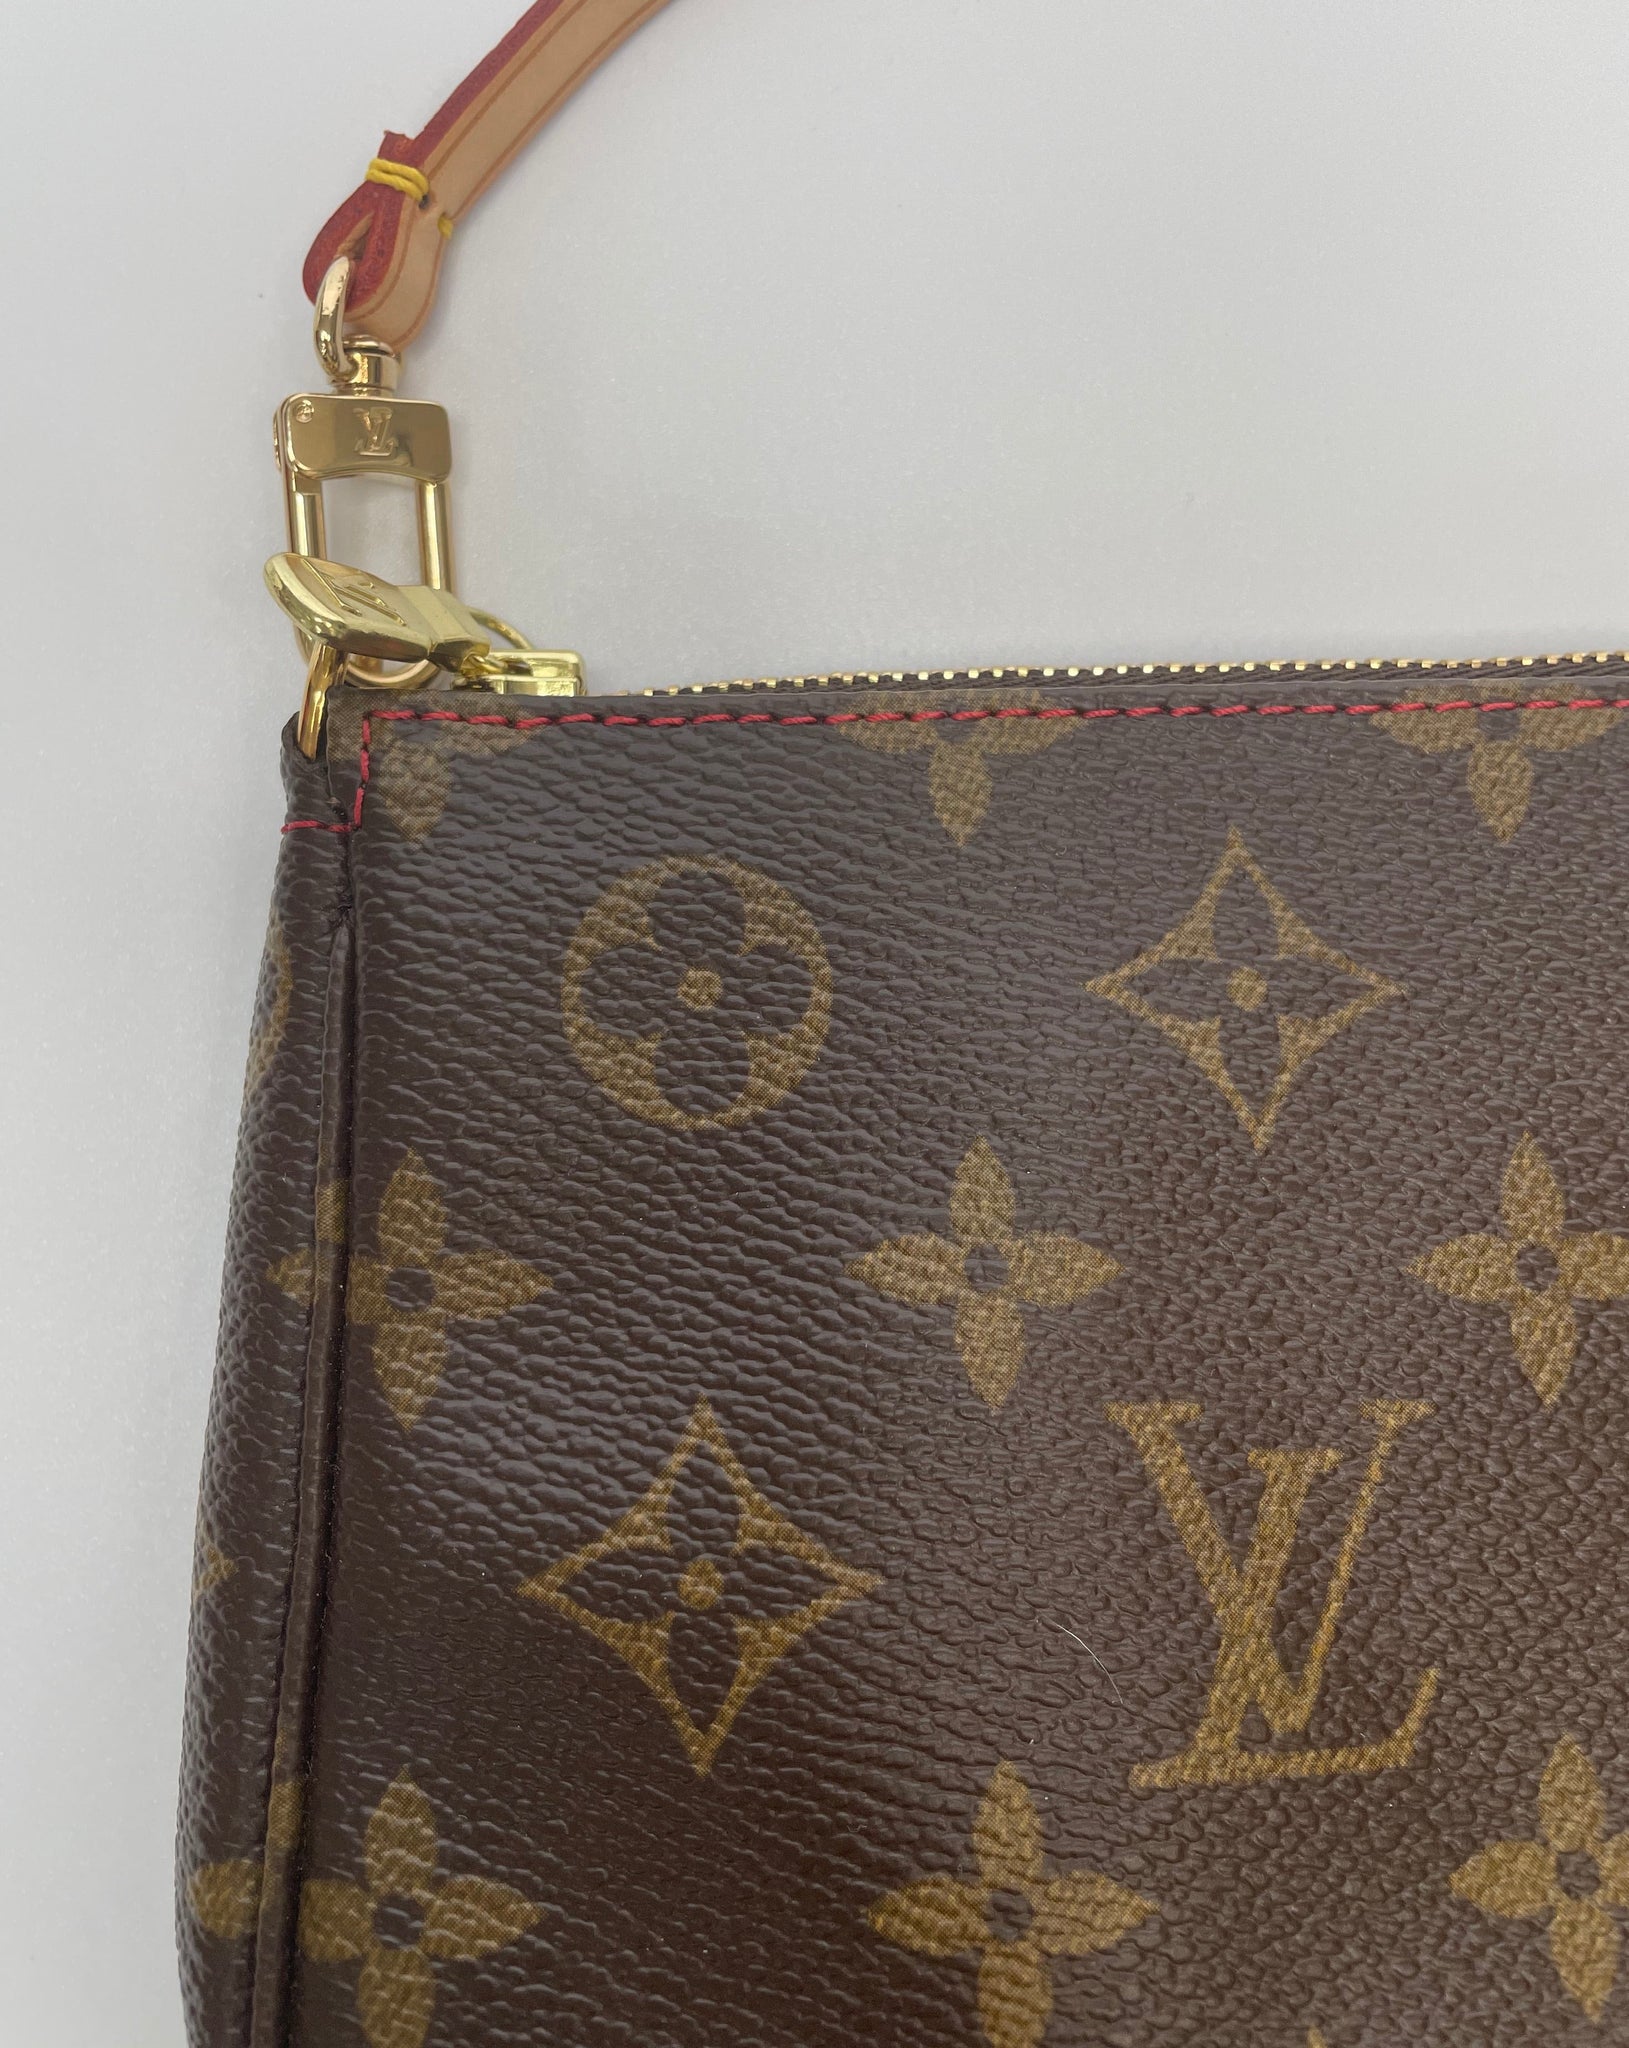 Louis Vuitton Limited Edition Cerises Pochette Accessories